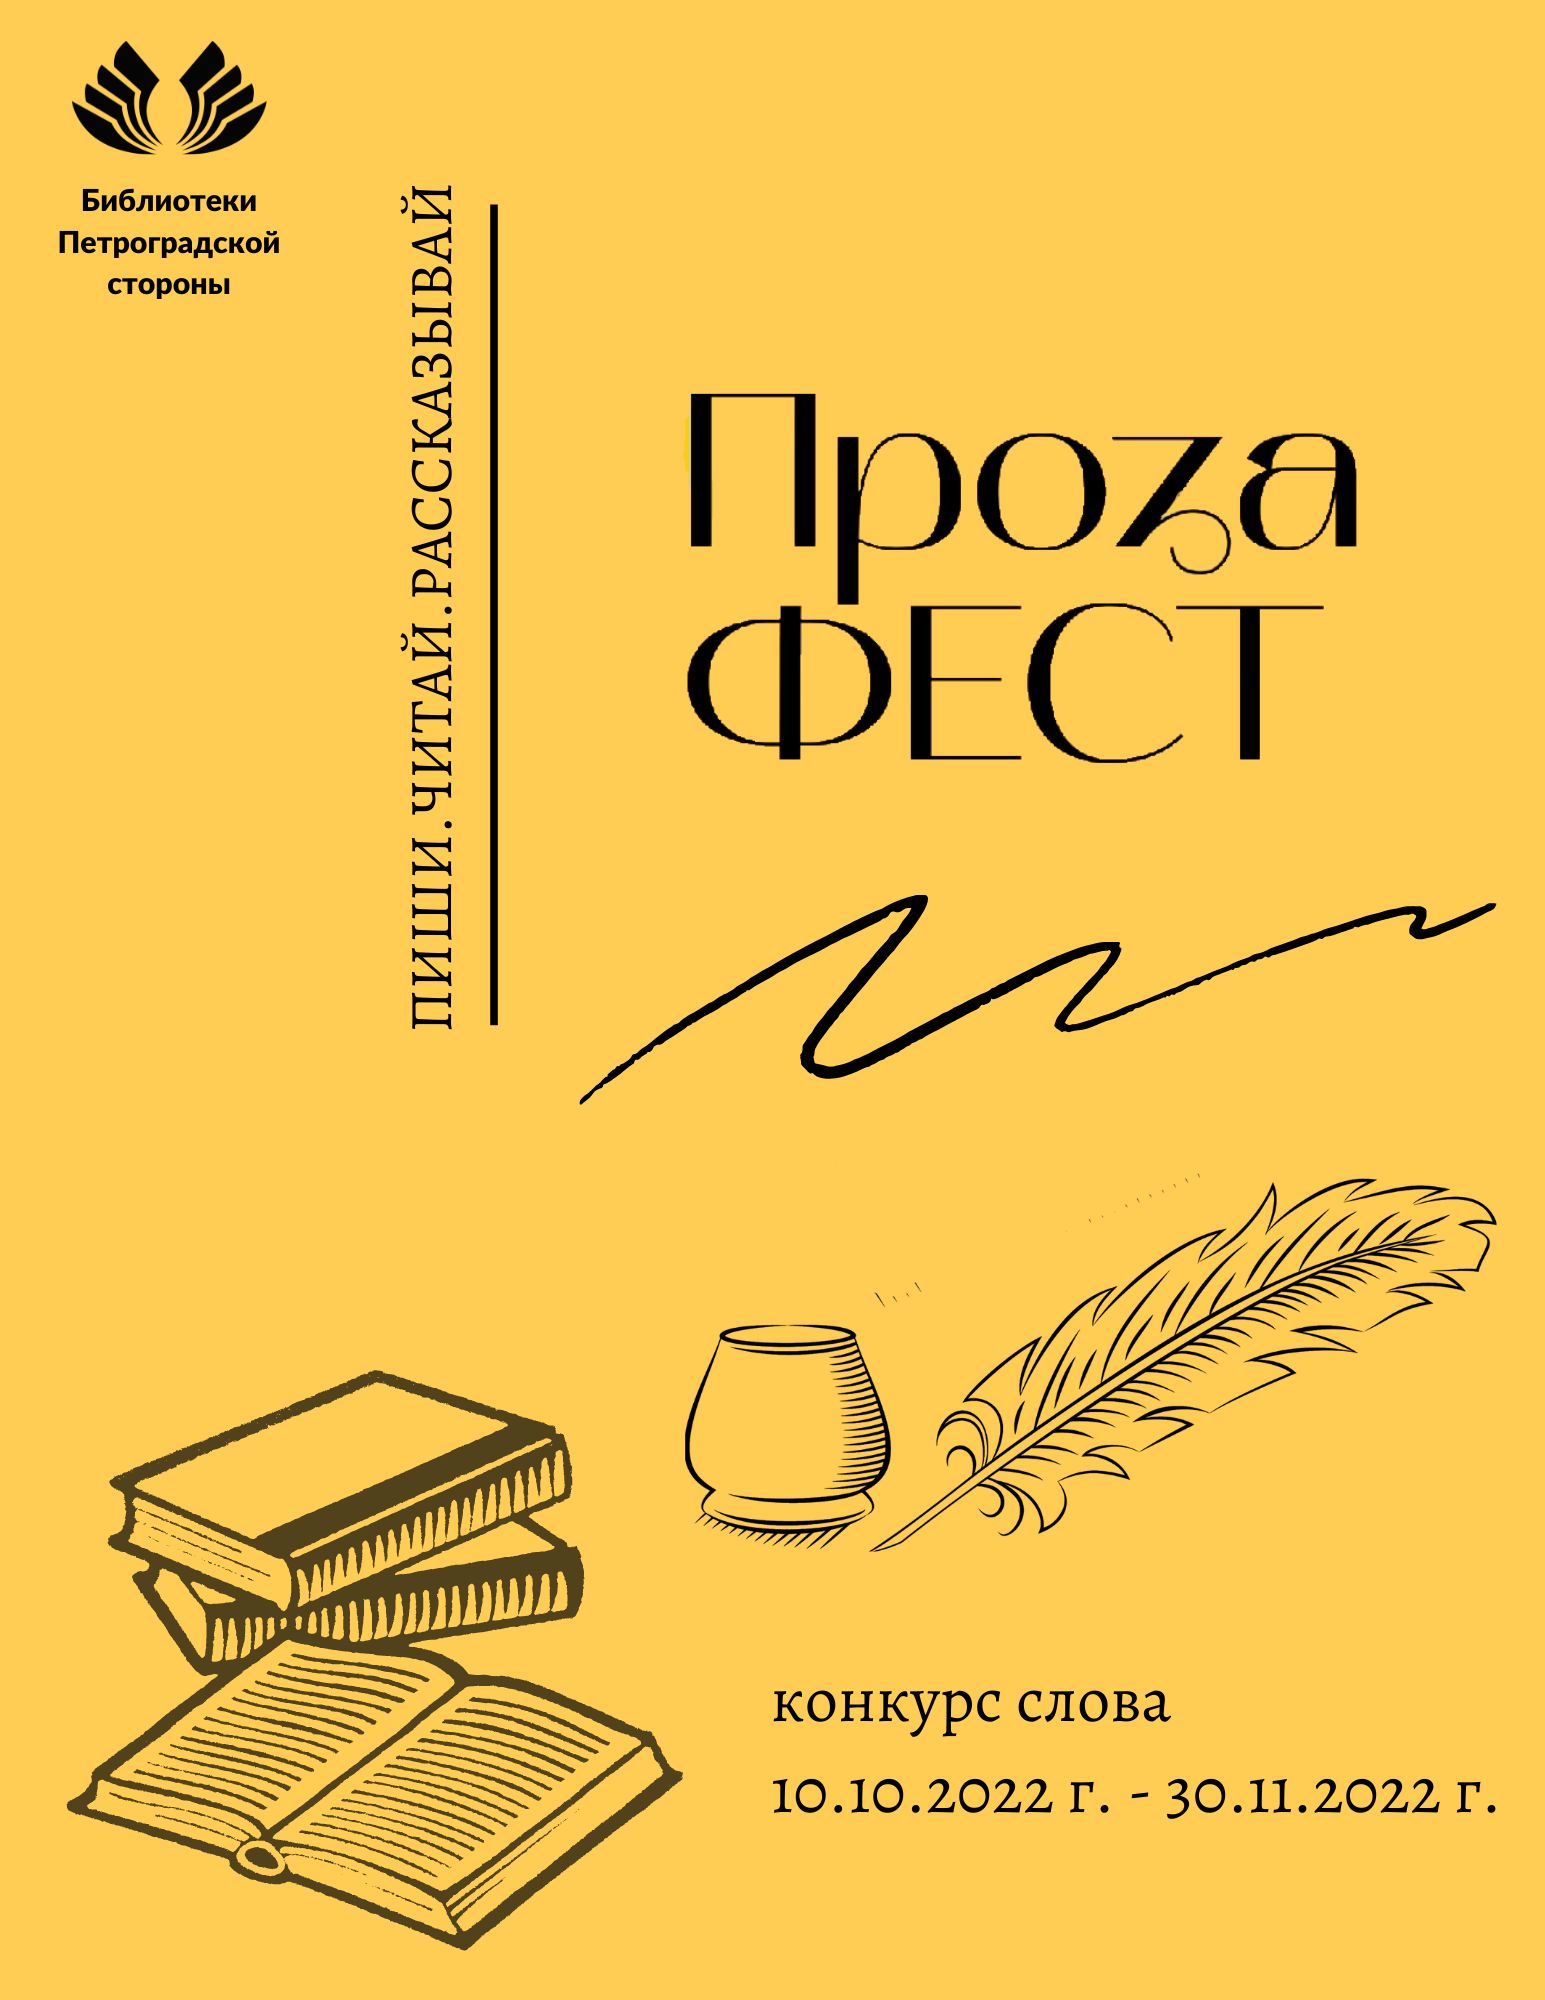 Библиотеки Петроградской стороны приглашают принять участие в конкурсе слова «ПРОЗАфест»